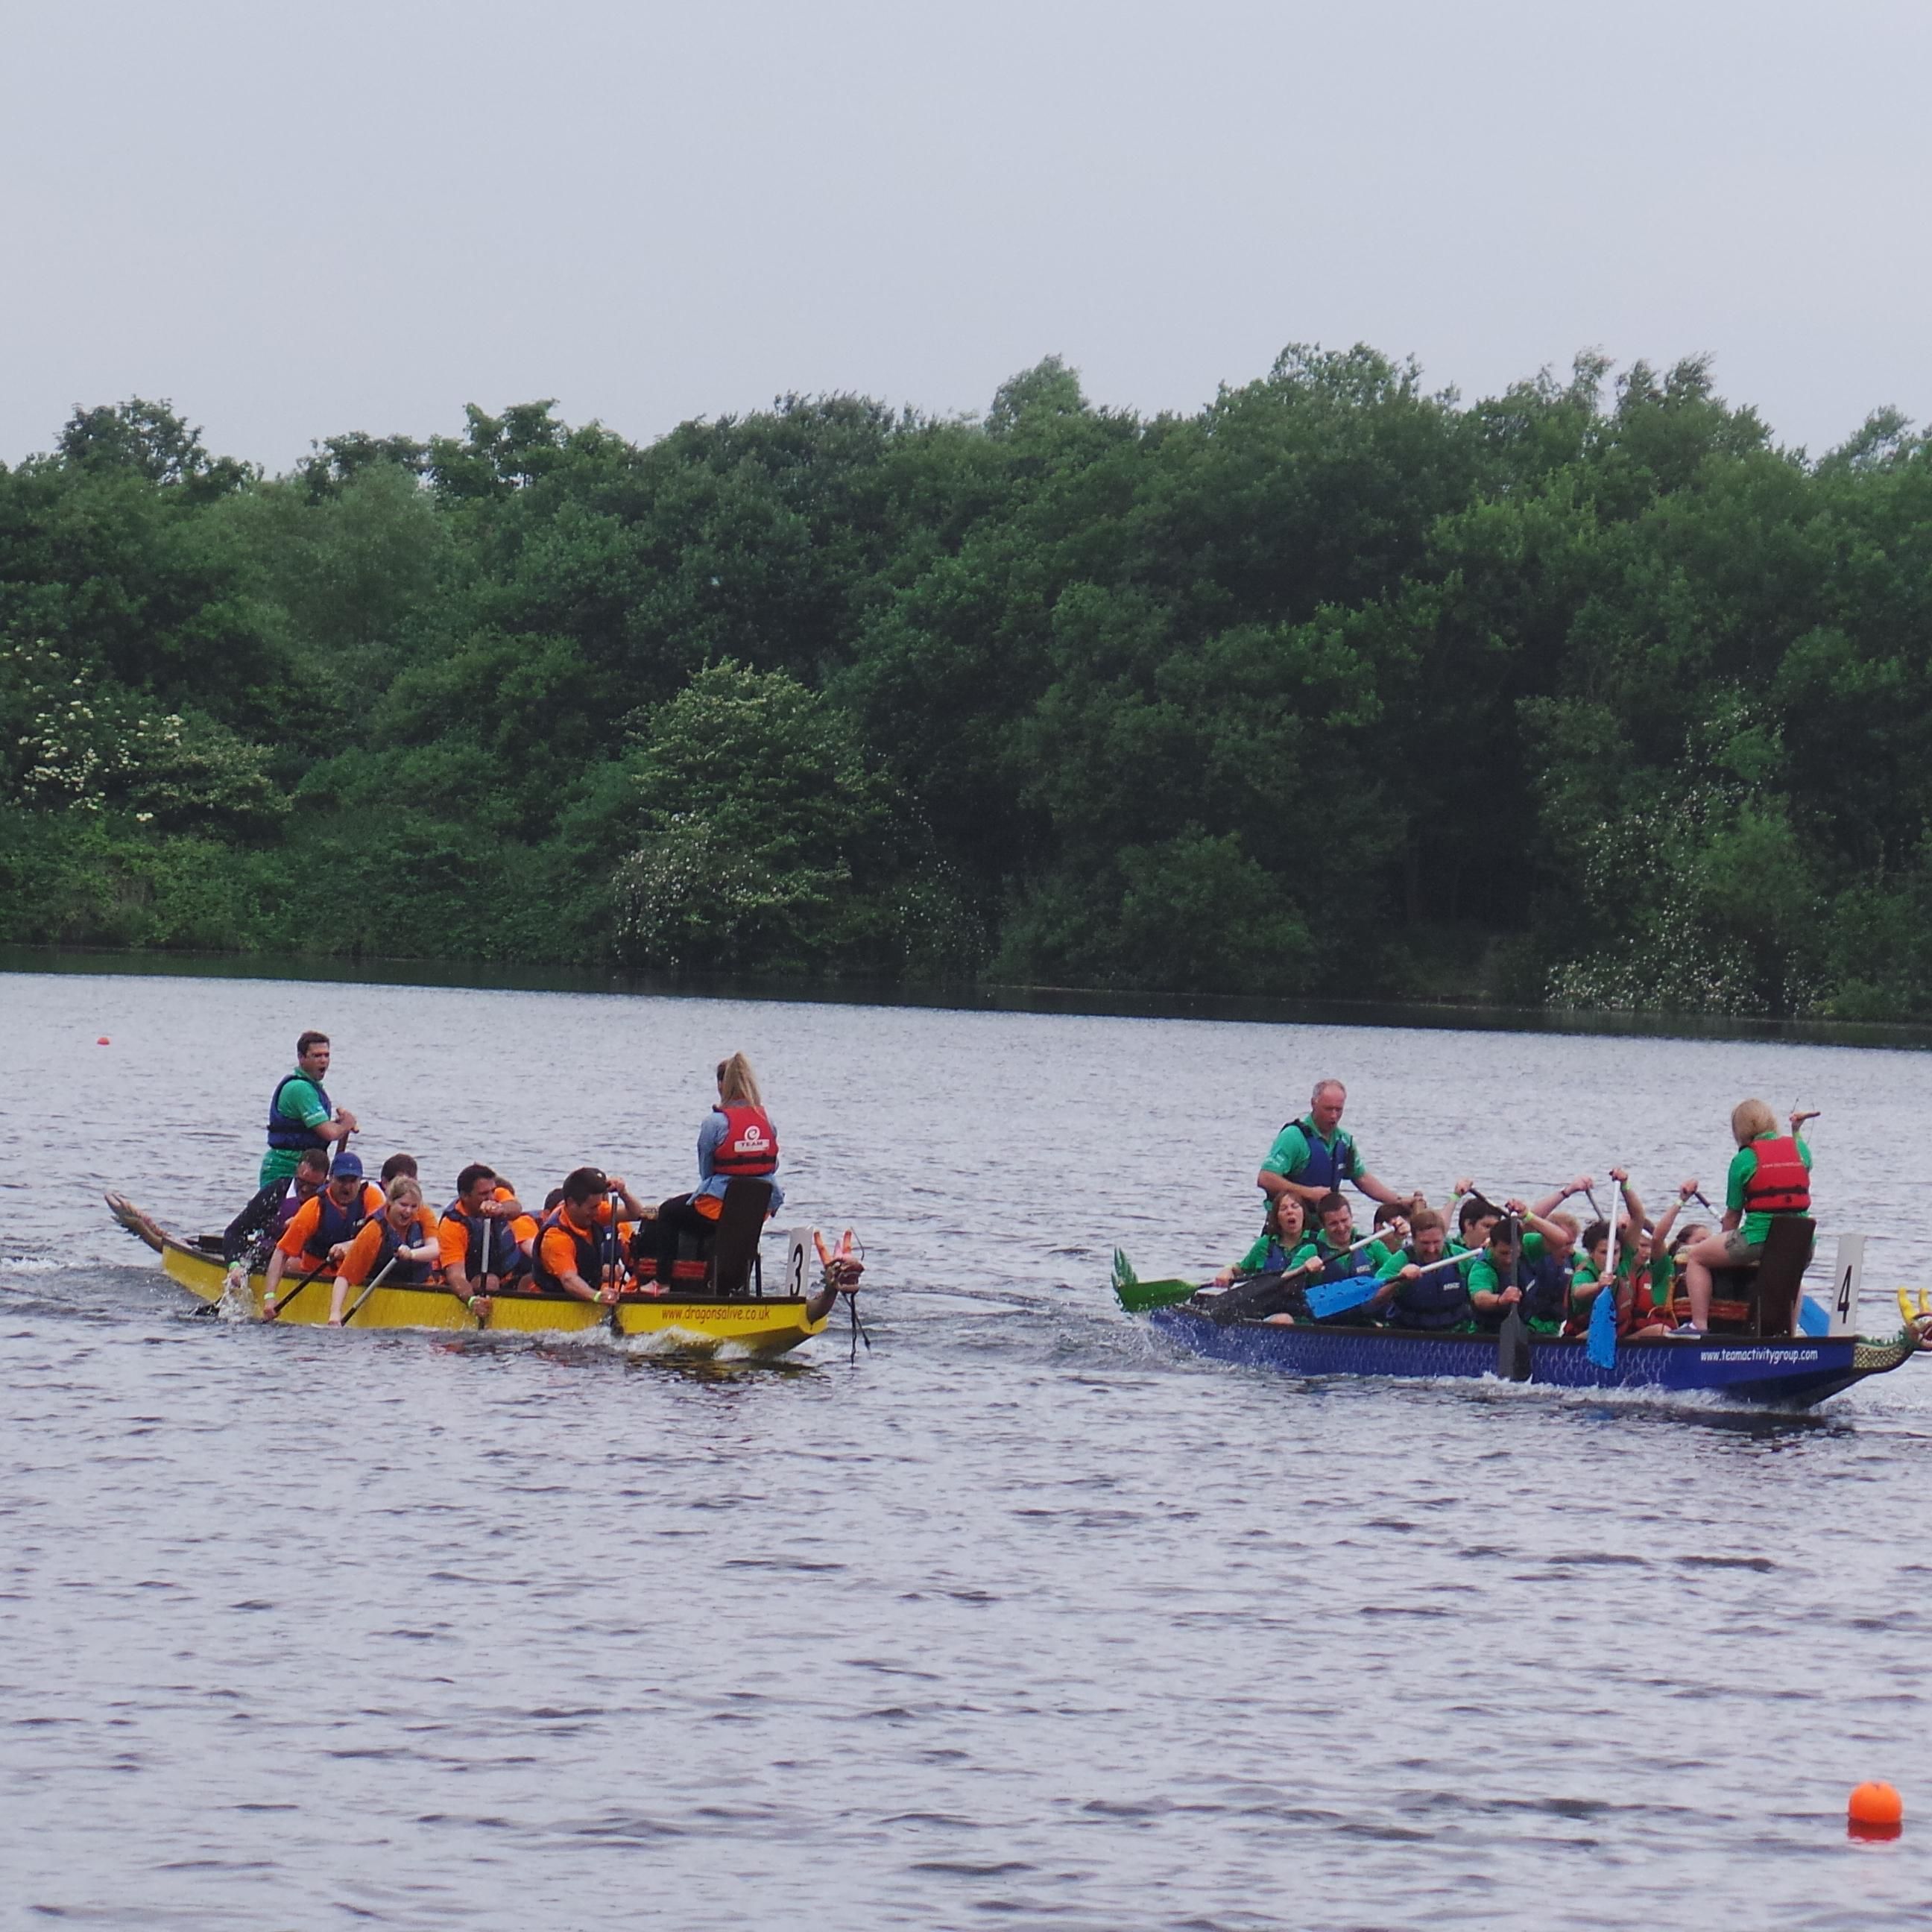 Dragon Boat Racing on the Lake